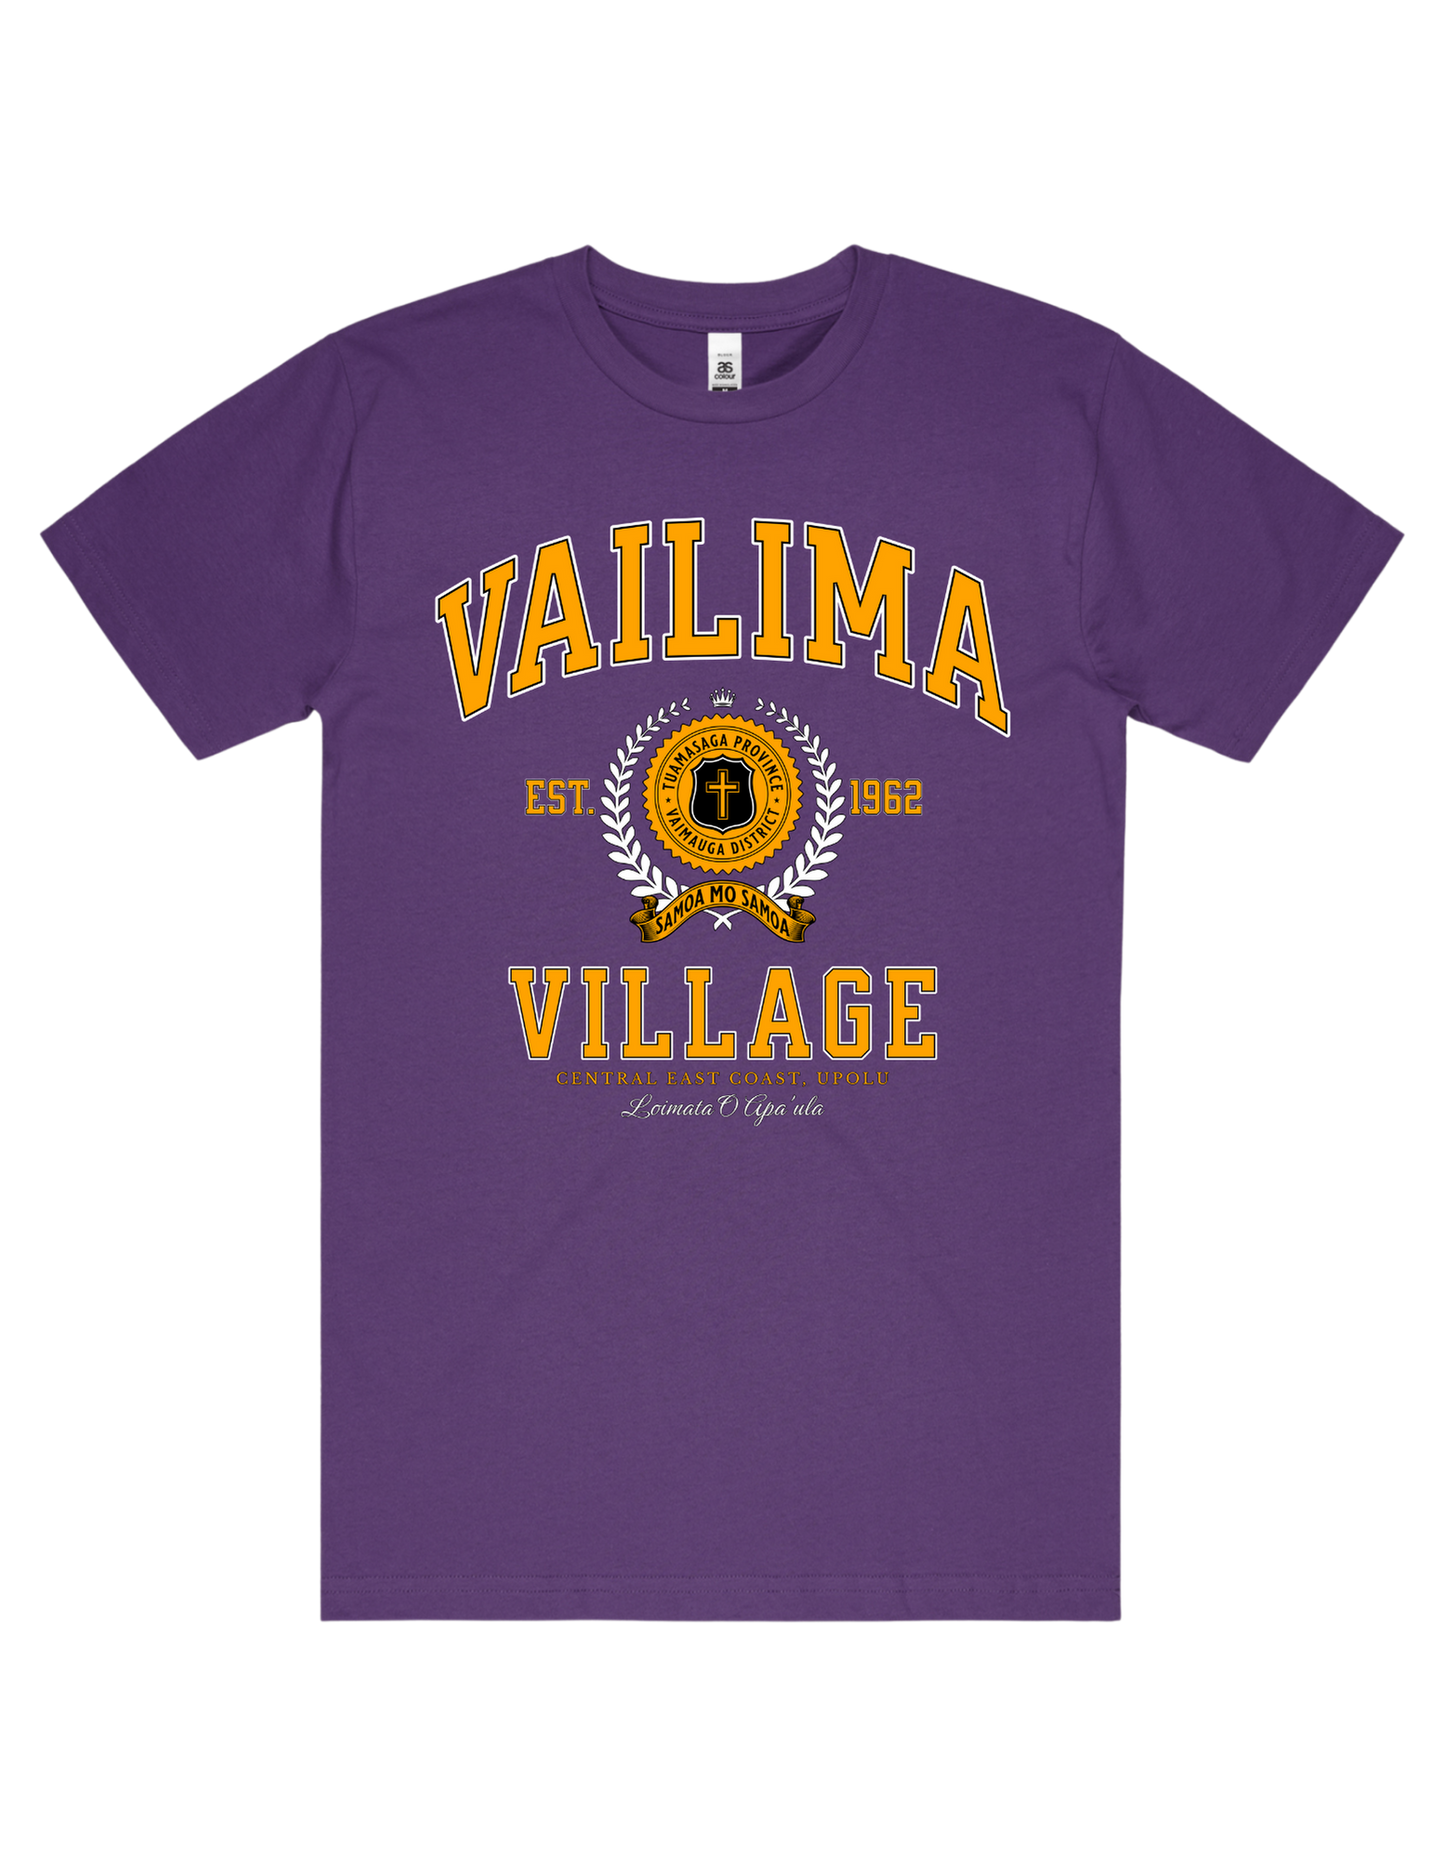 Vailima Varsity Tee 5050 - AS Colour